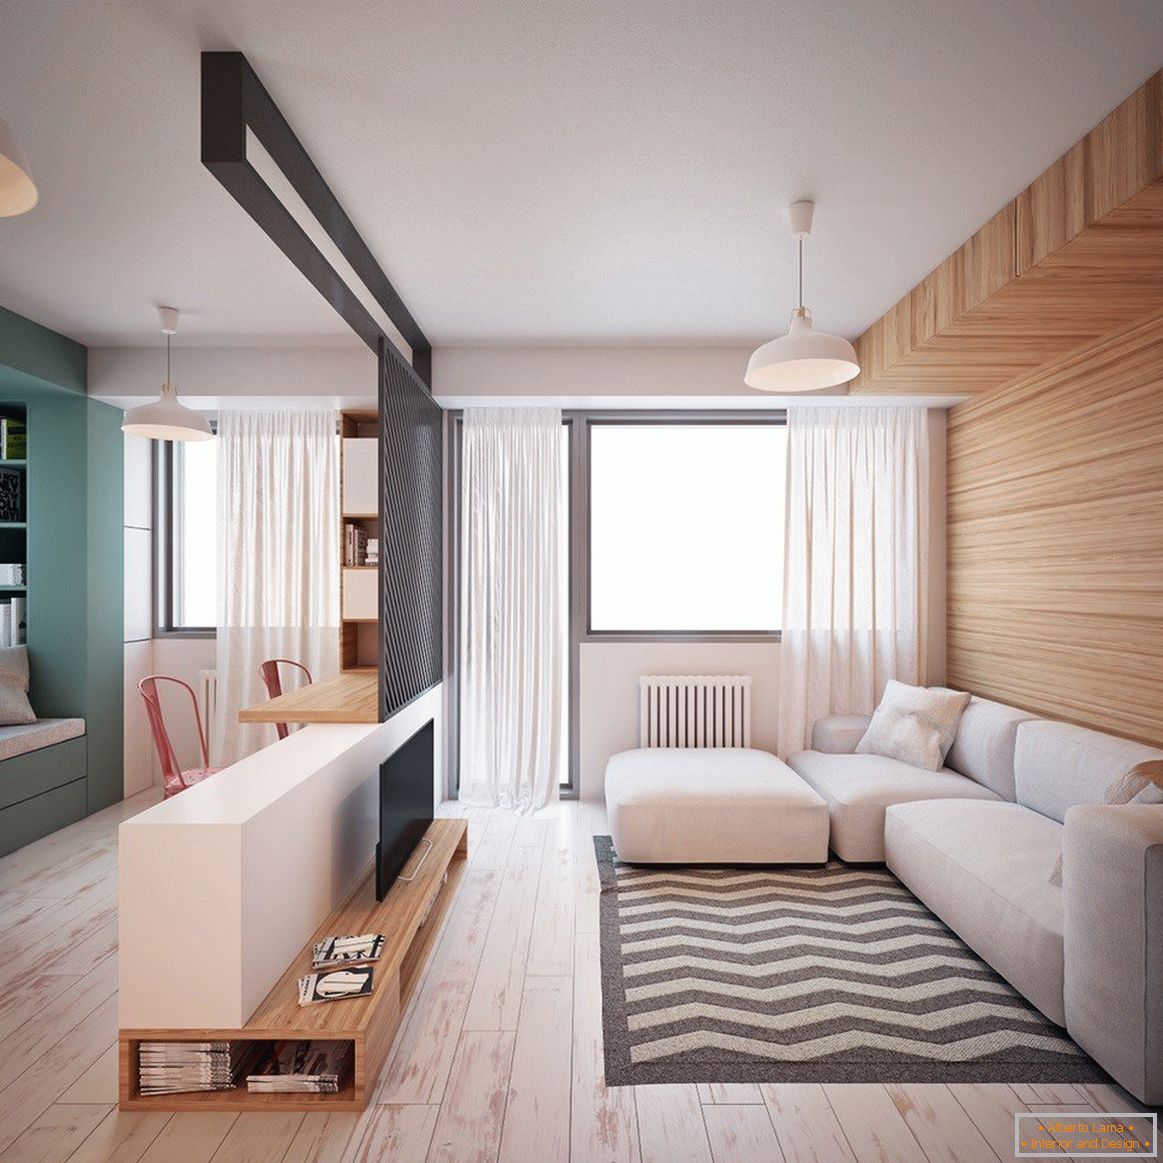 Jedenizbový bytový dom má rozlohu 35 m2